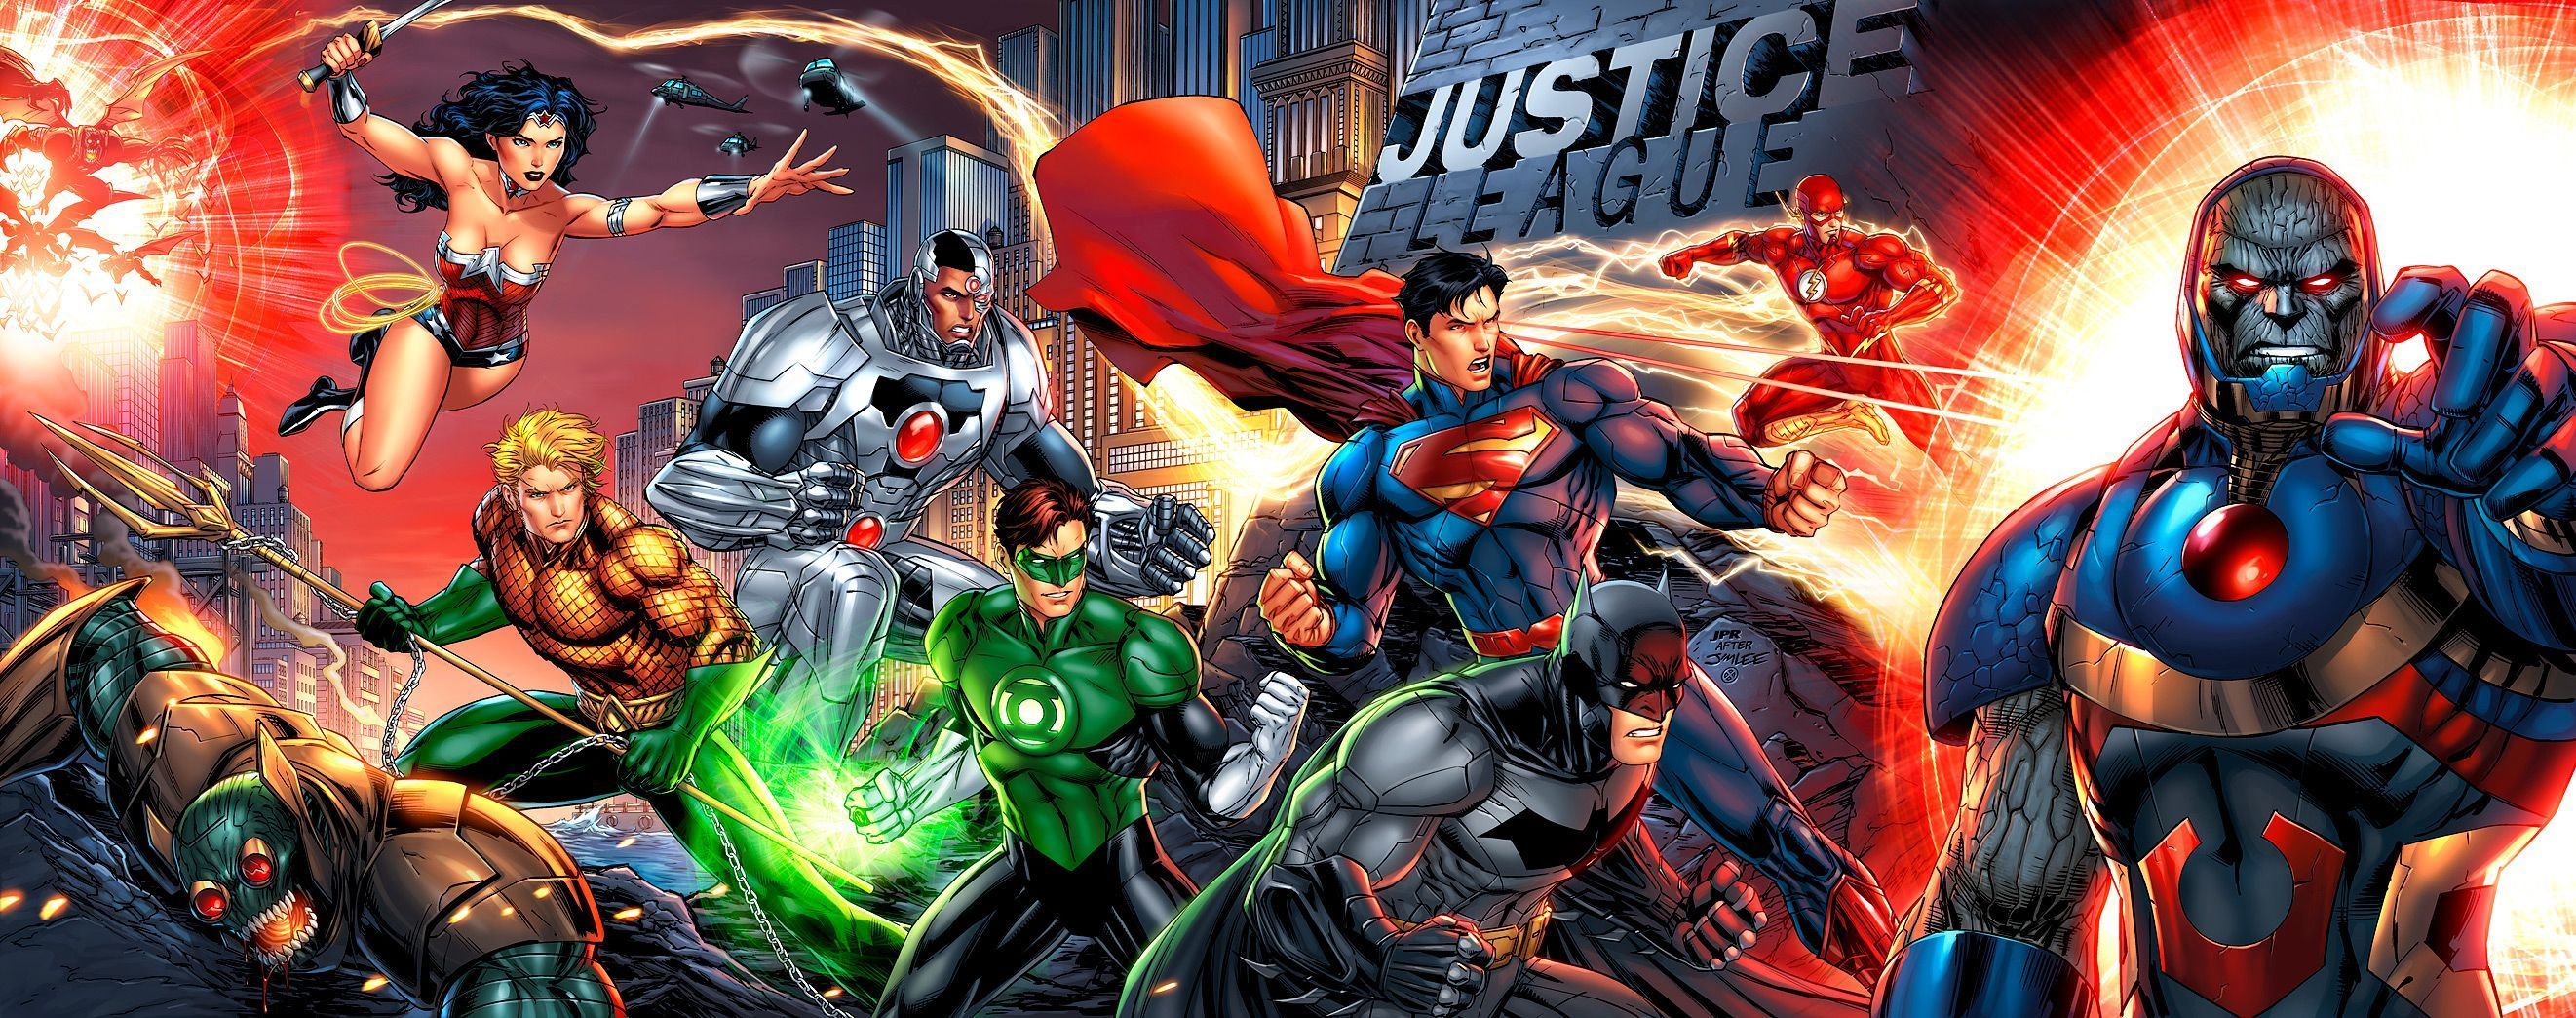 Justice League by JPRart on DeviantArt